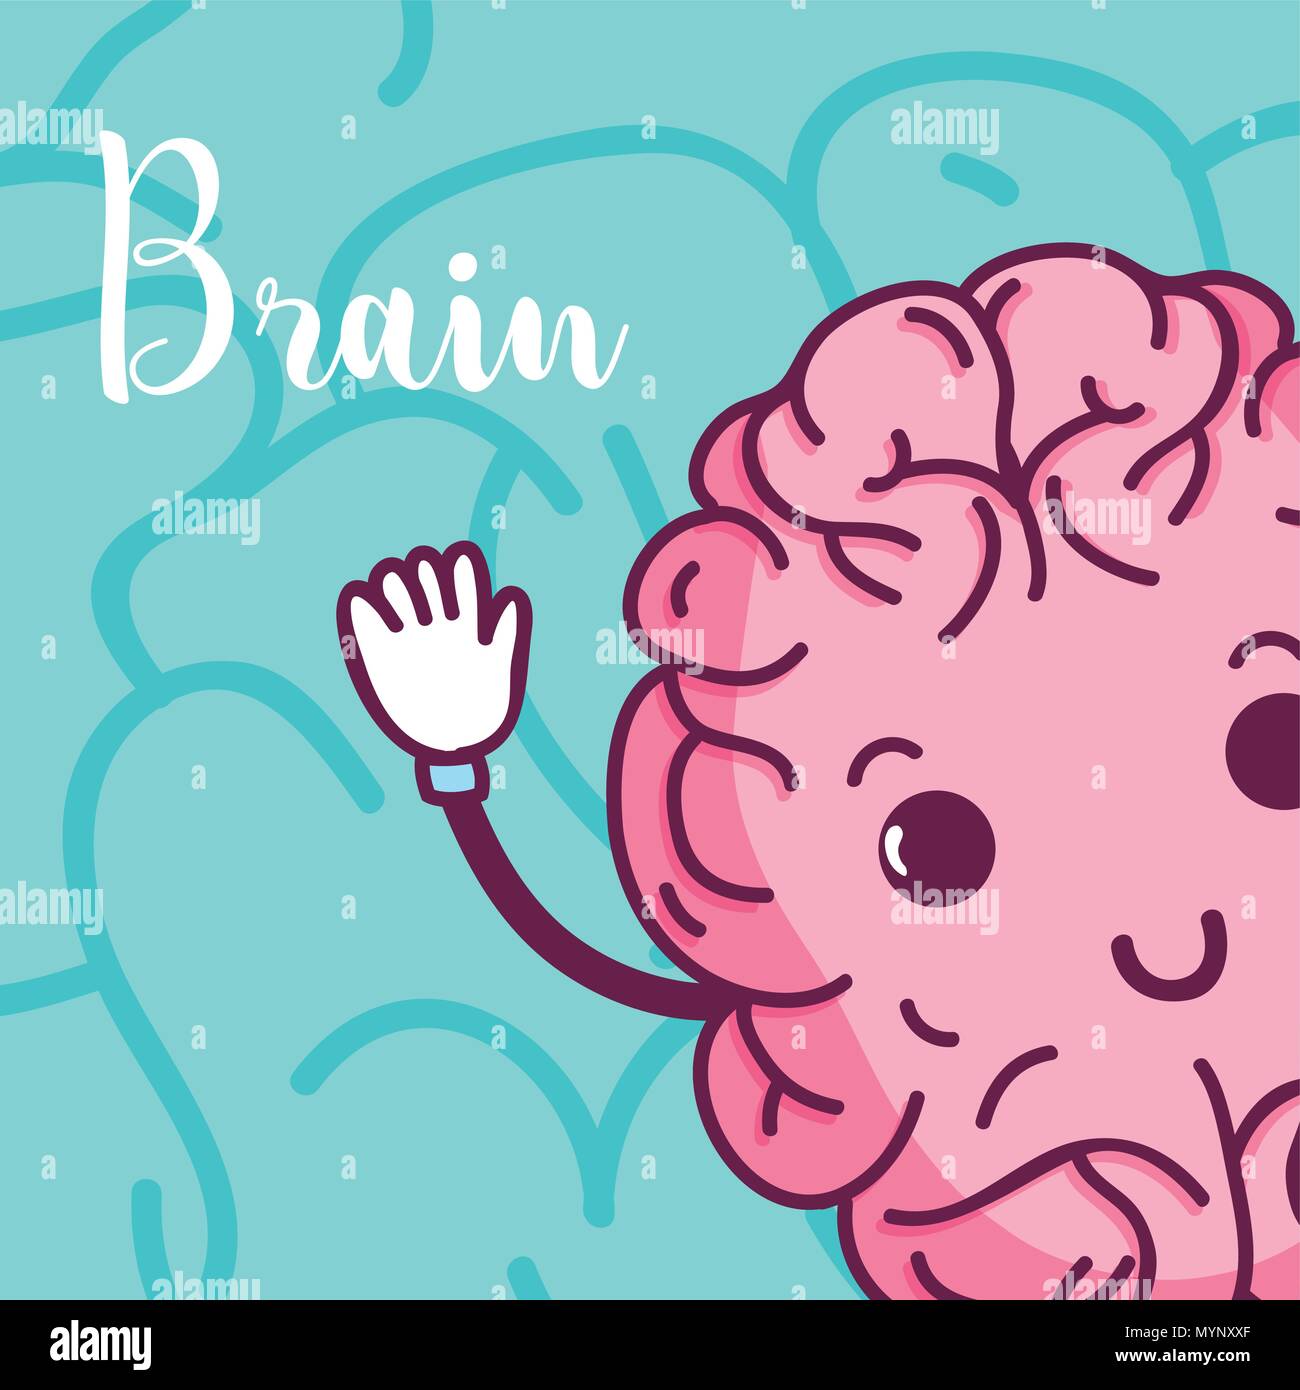 Cute brain cartoon Stock Vector